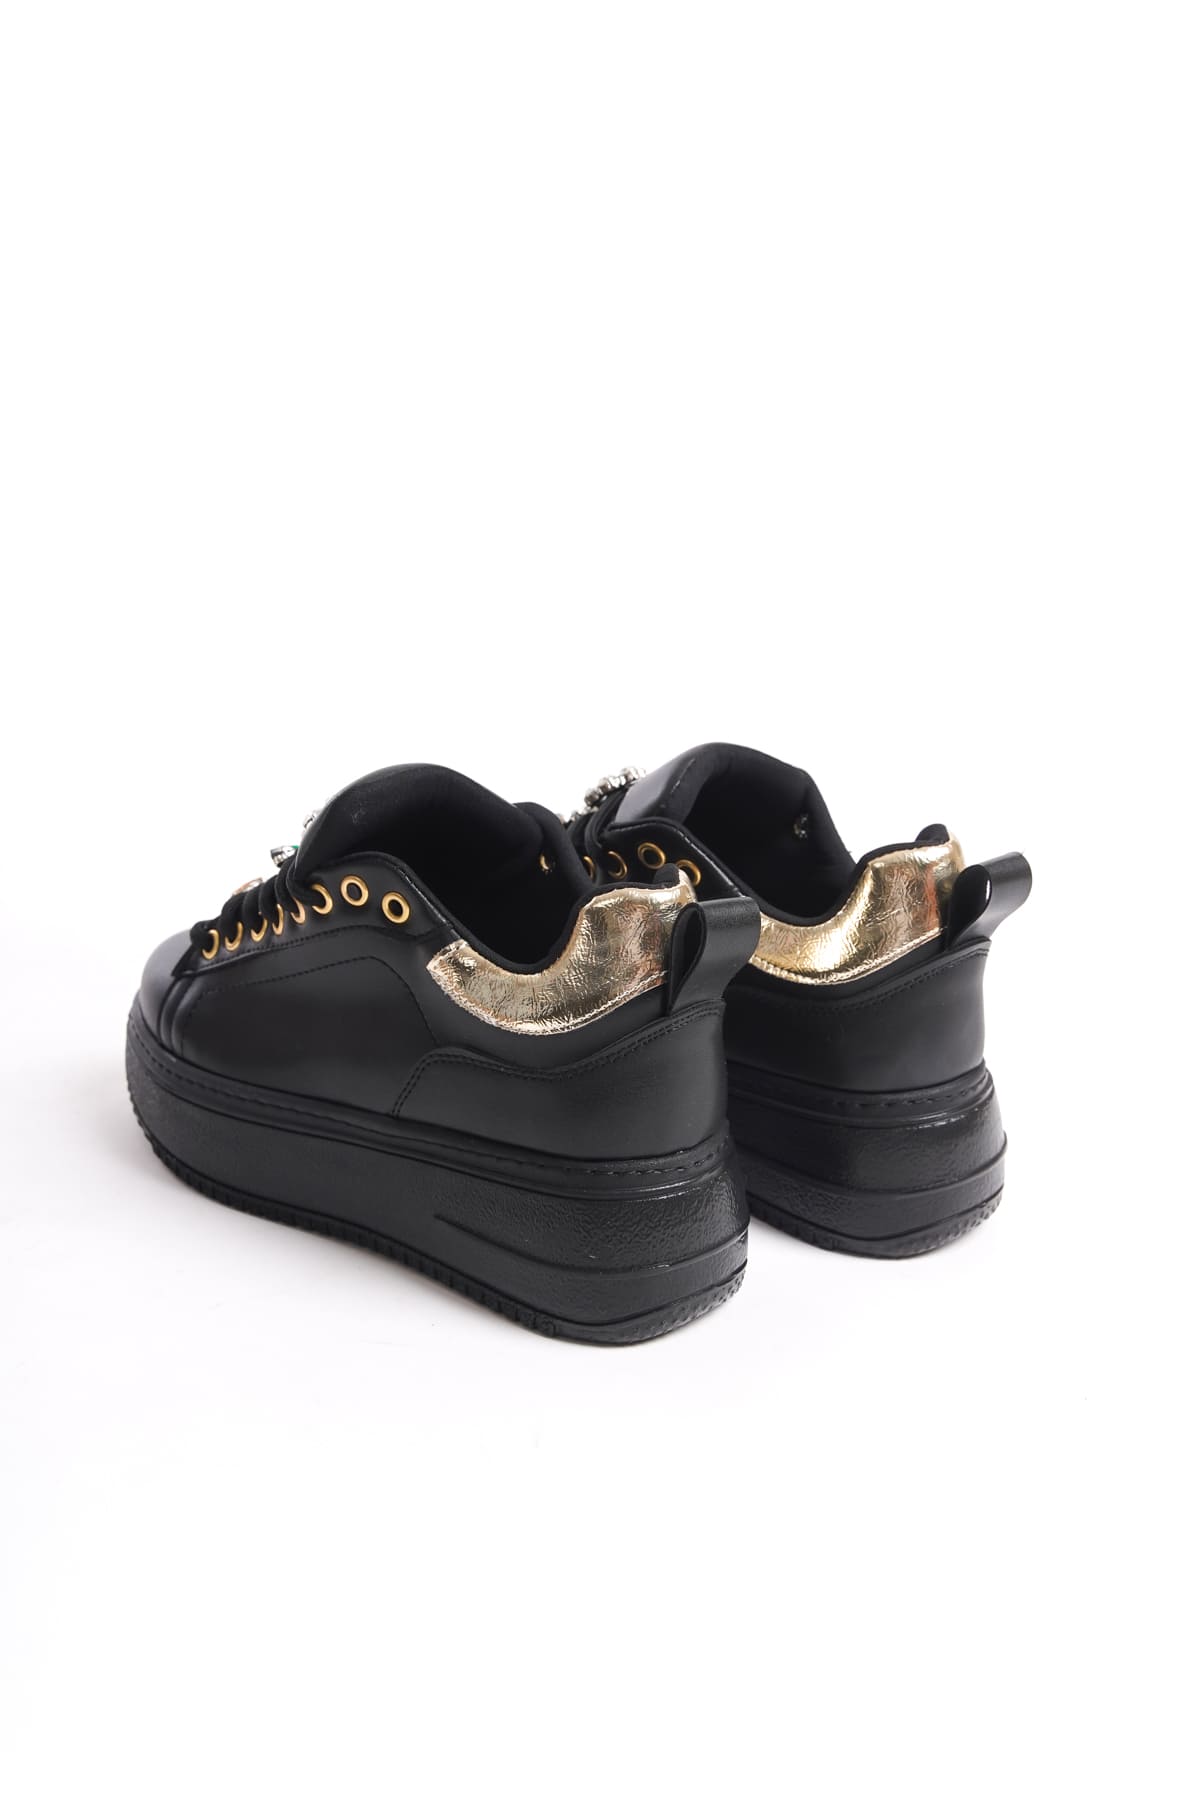 Lisinya948  Bağcıklı Ortopedik Taban Renkli Taş Dekorlu Kadın Sneaker Ayakkabı ST Siyah/Altın